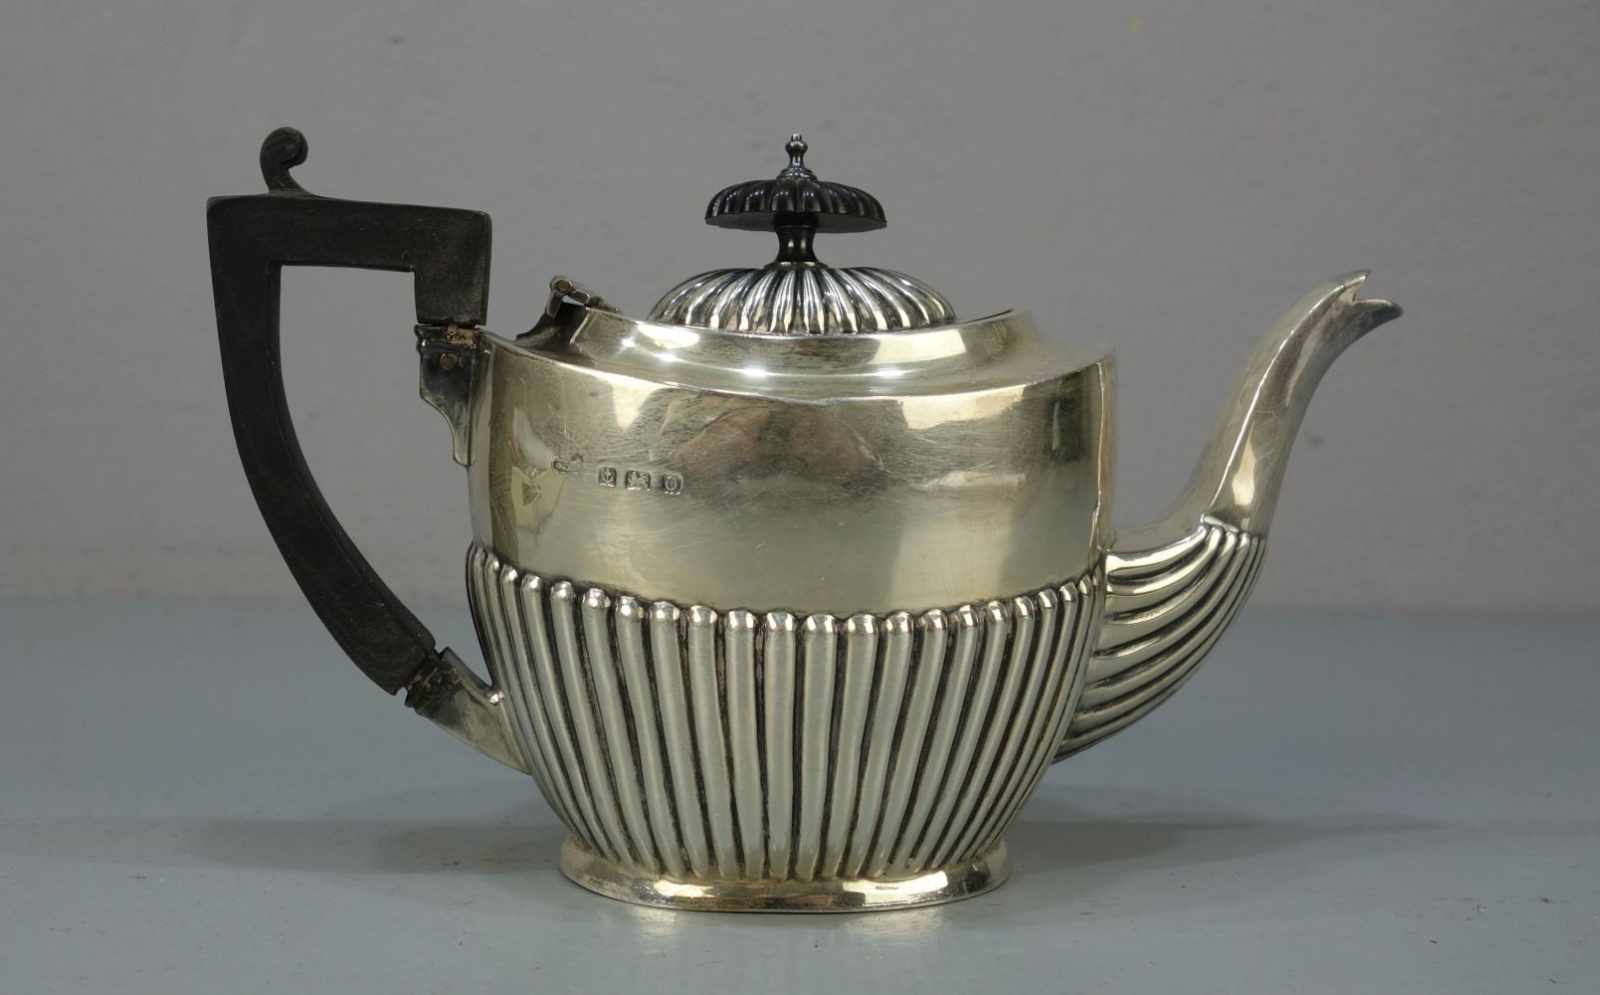 KANNE / TEEKANNE / BACHELORKANNE / silver tea pot, Sterlingsilber (273,5 g), Birmingham / England, - Image 3 of 5